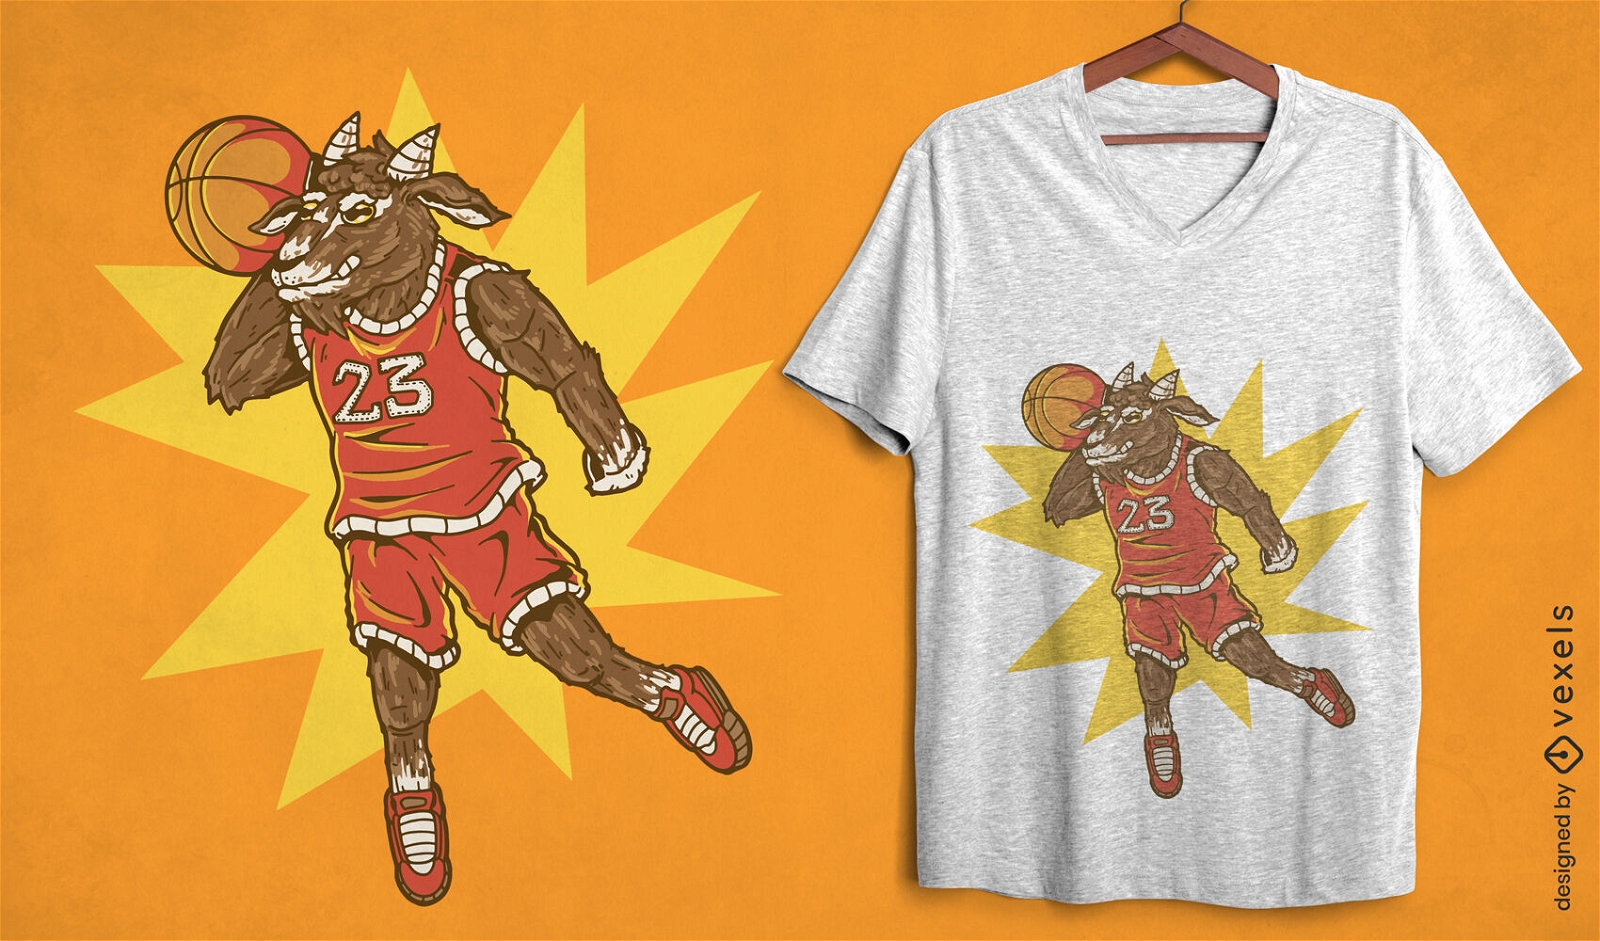 Goat basketball player t-shirt design